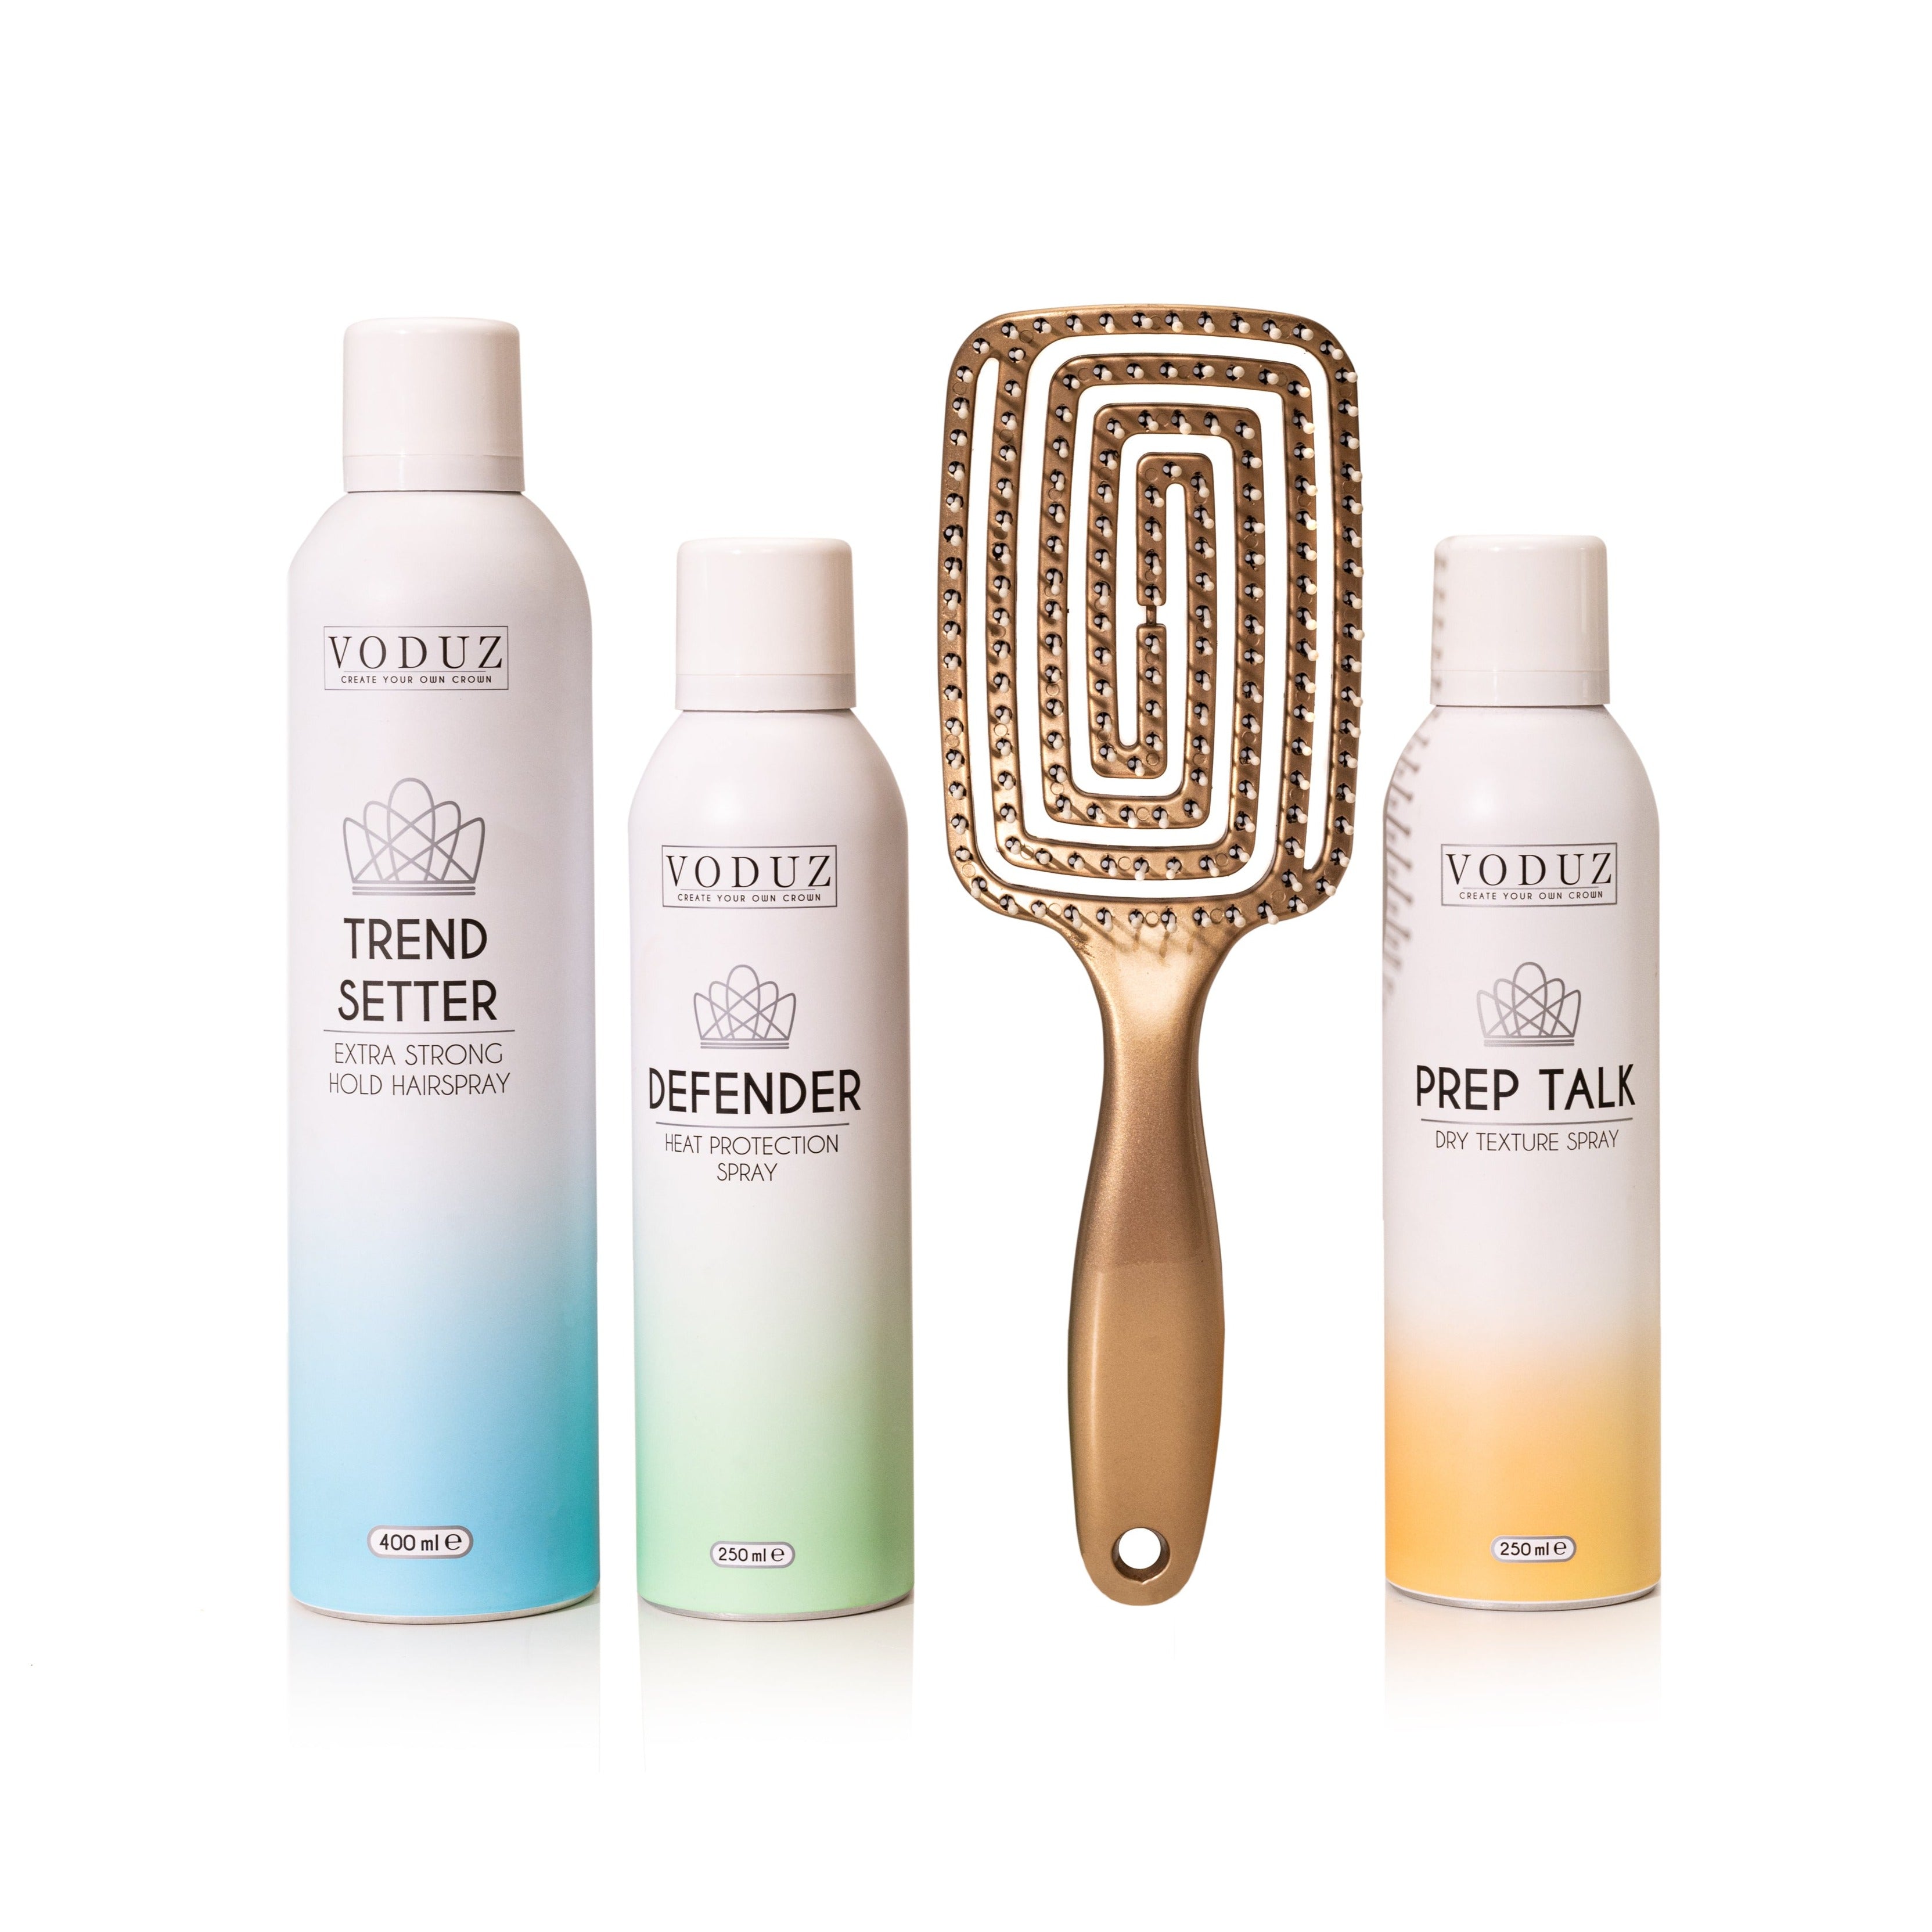 Voduz Mist & Manetane - Hair Styling Regime, products